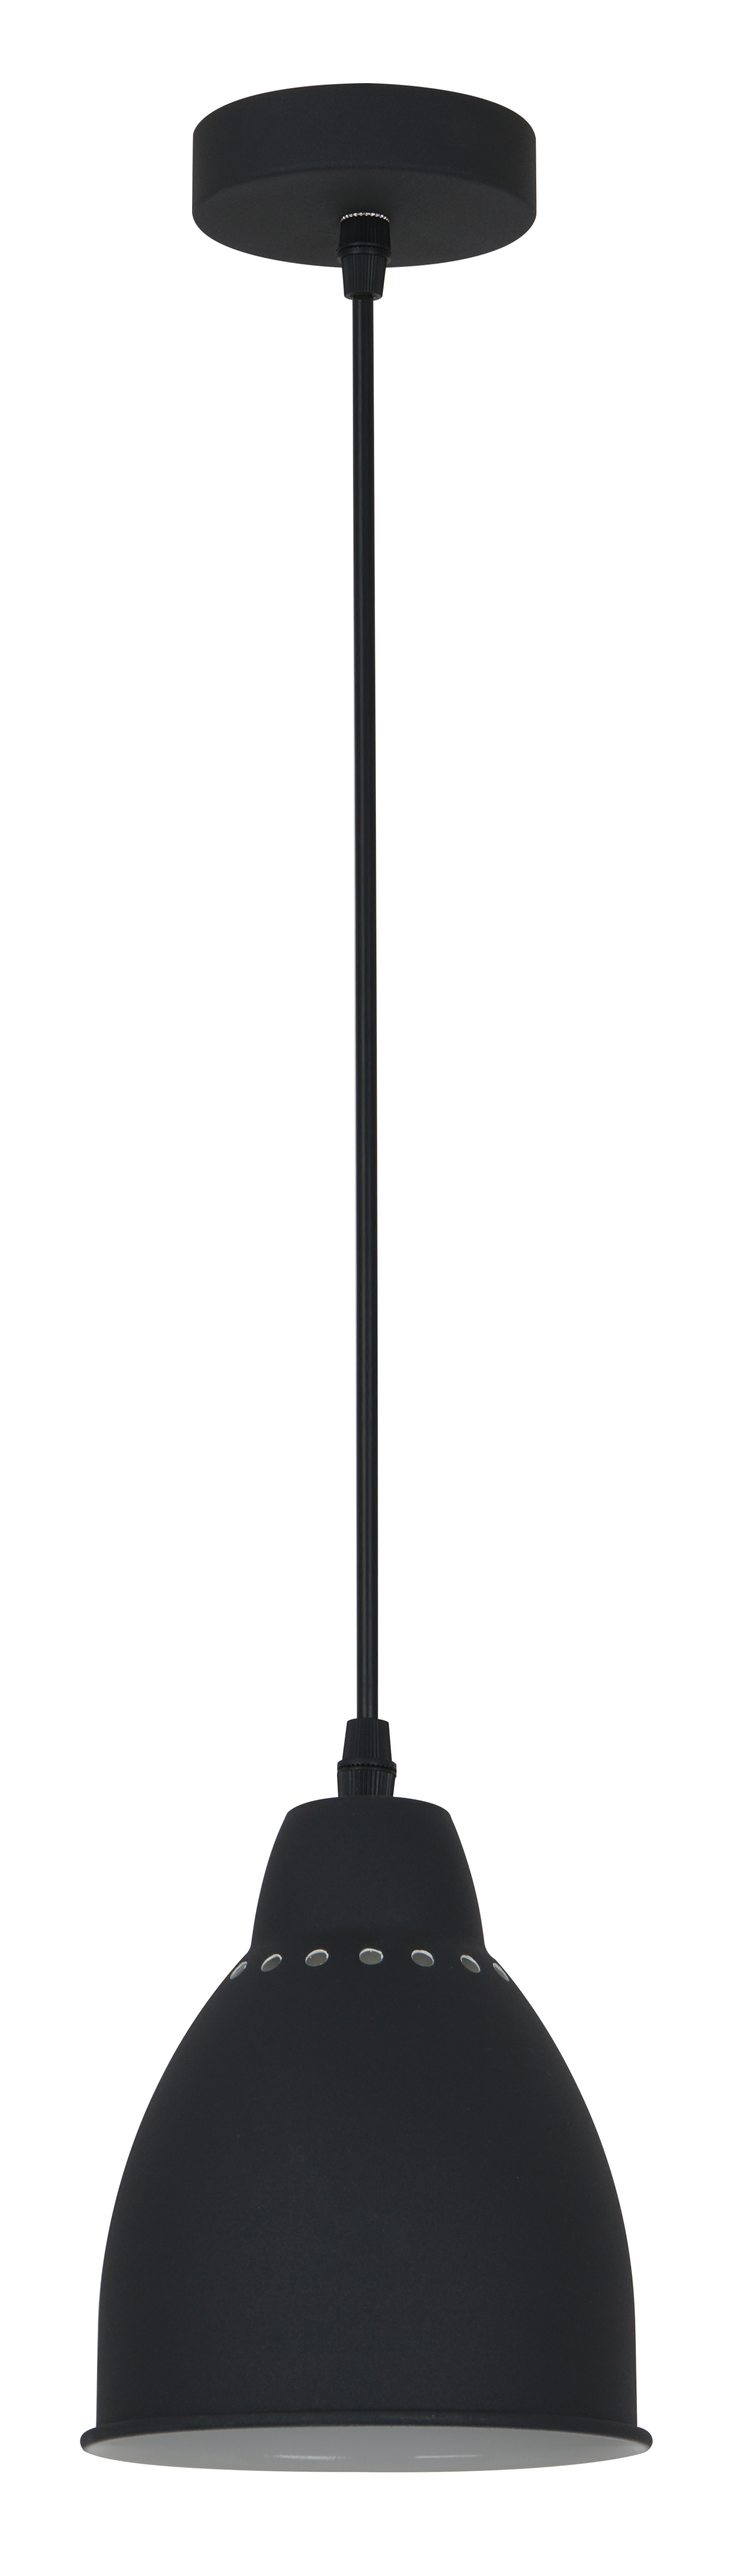 Светильник подвесной Camelion PL-430S-1 С02 черный в стиле LOFT, 1х E27, 60Вт, 230В, металл 13081